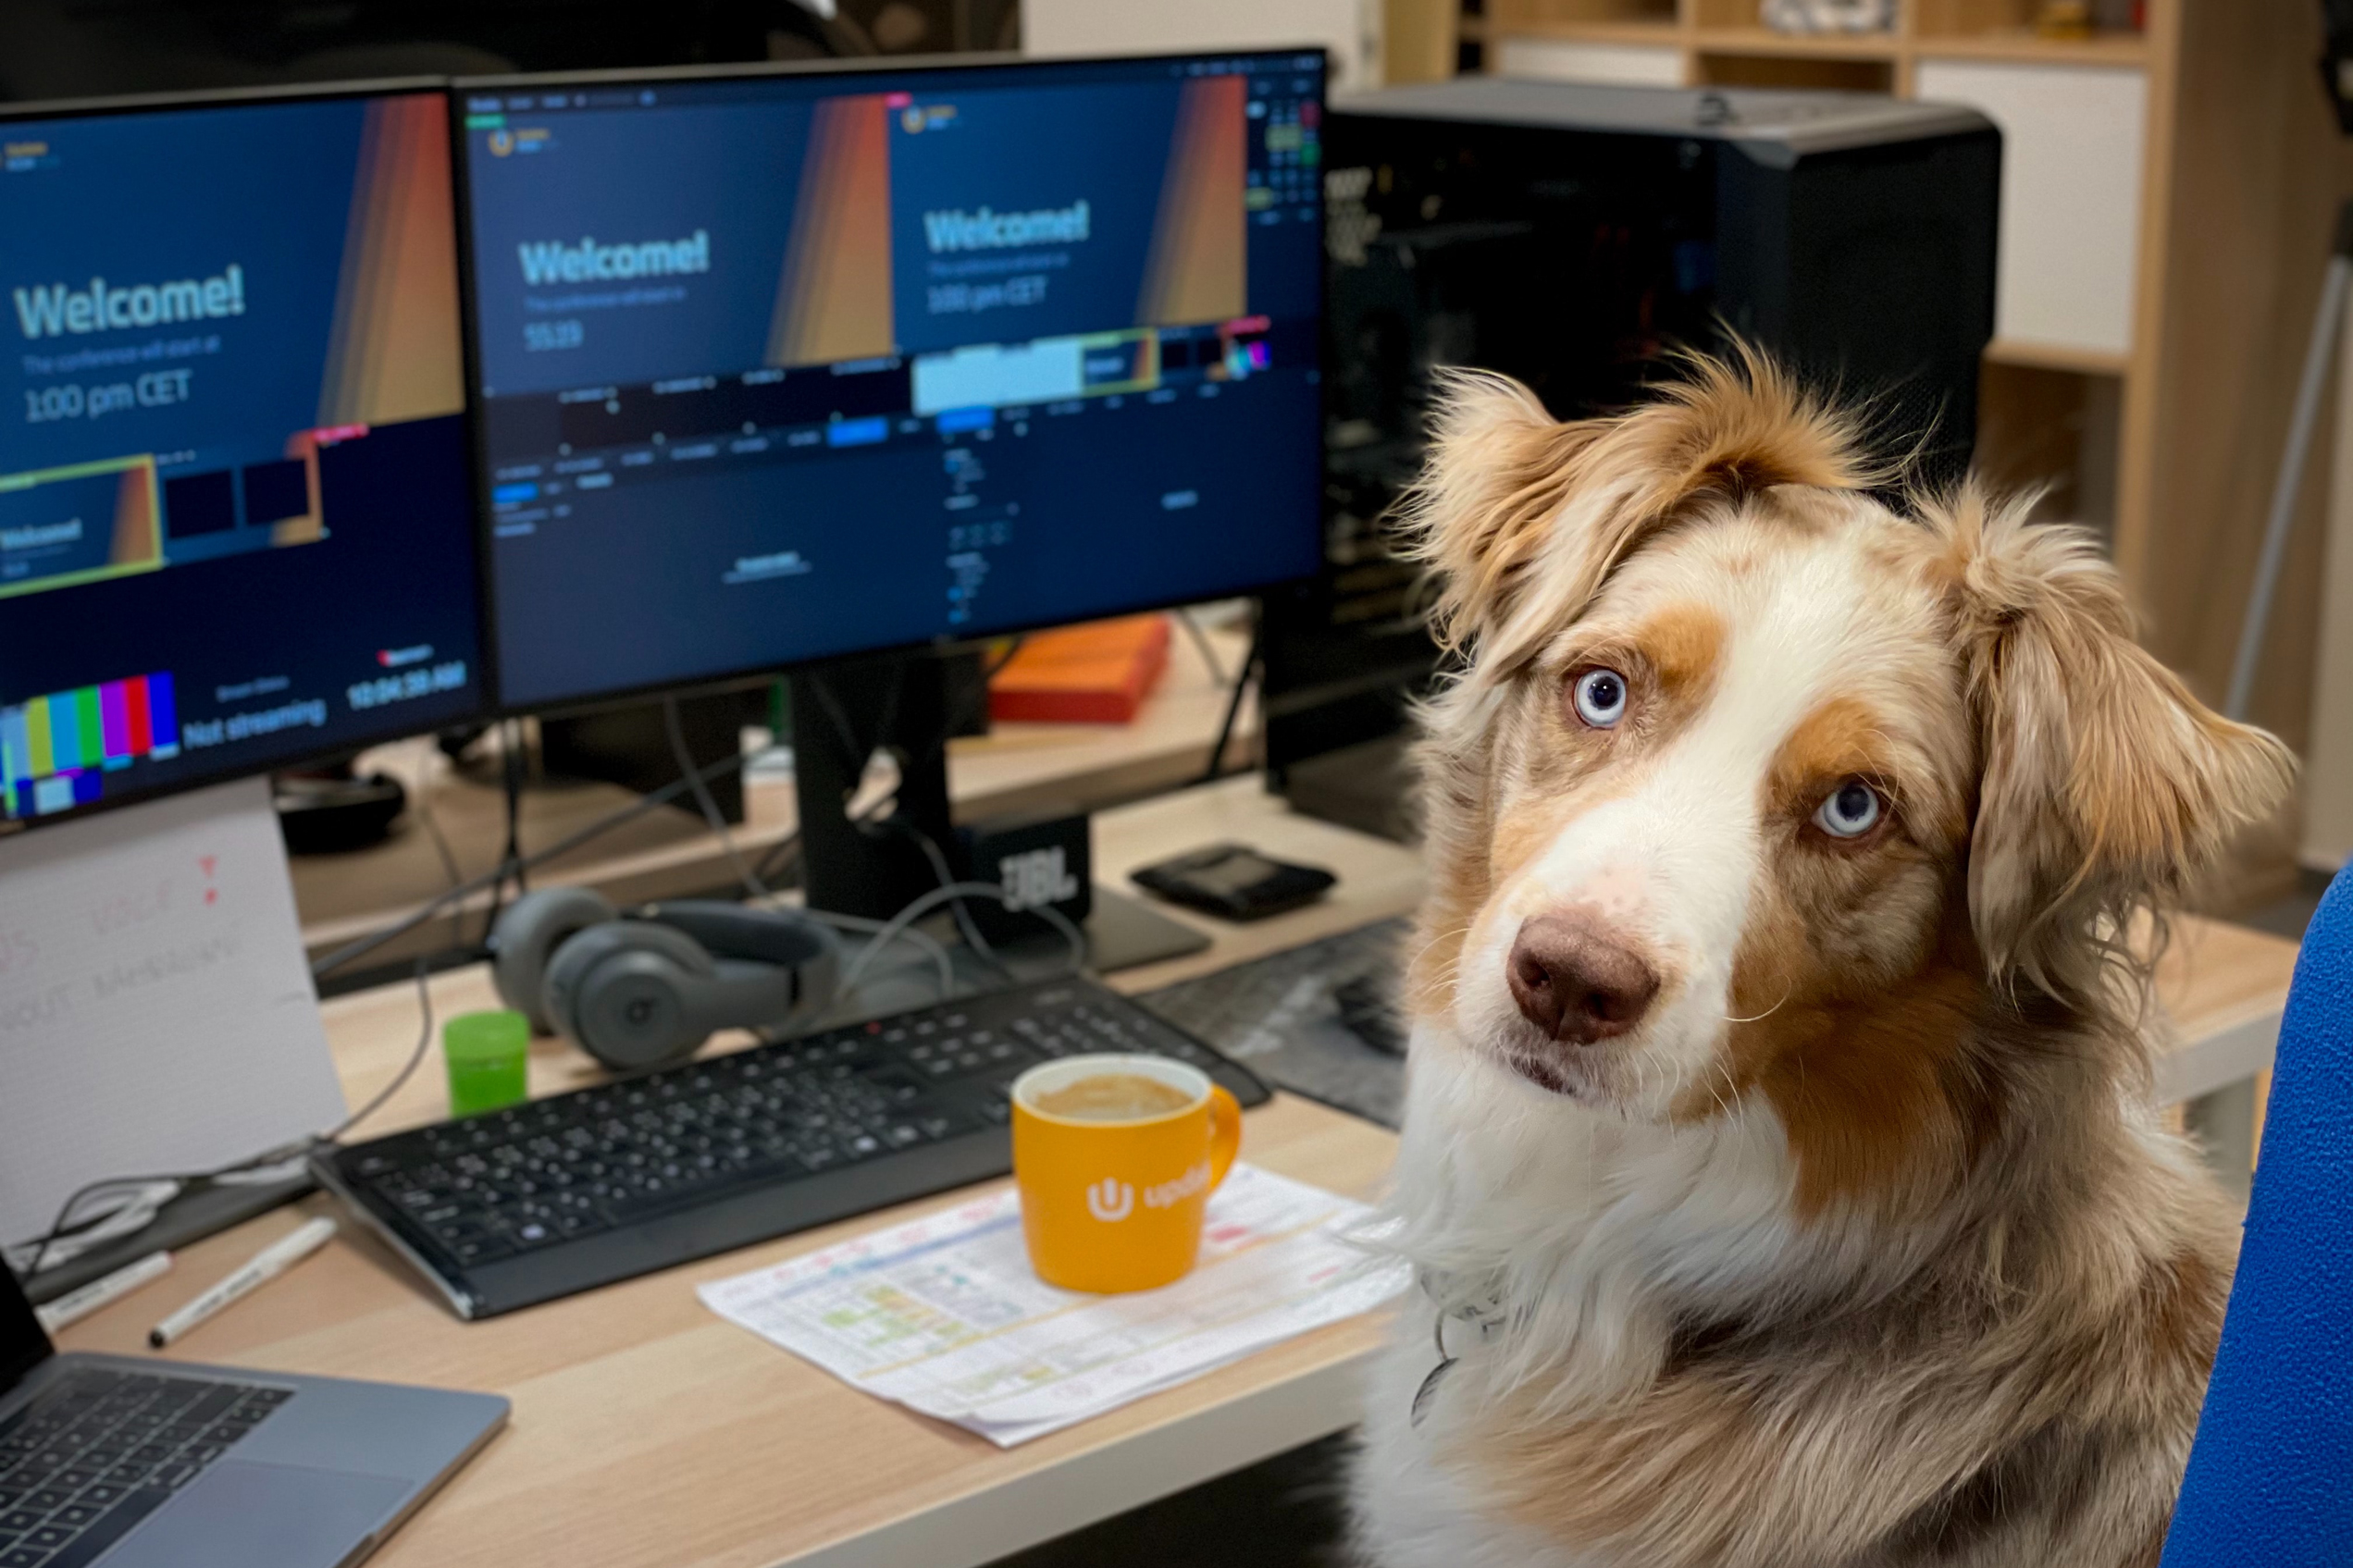 Dog at computer desk